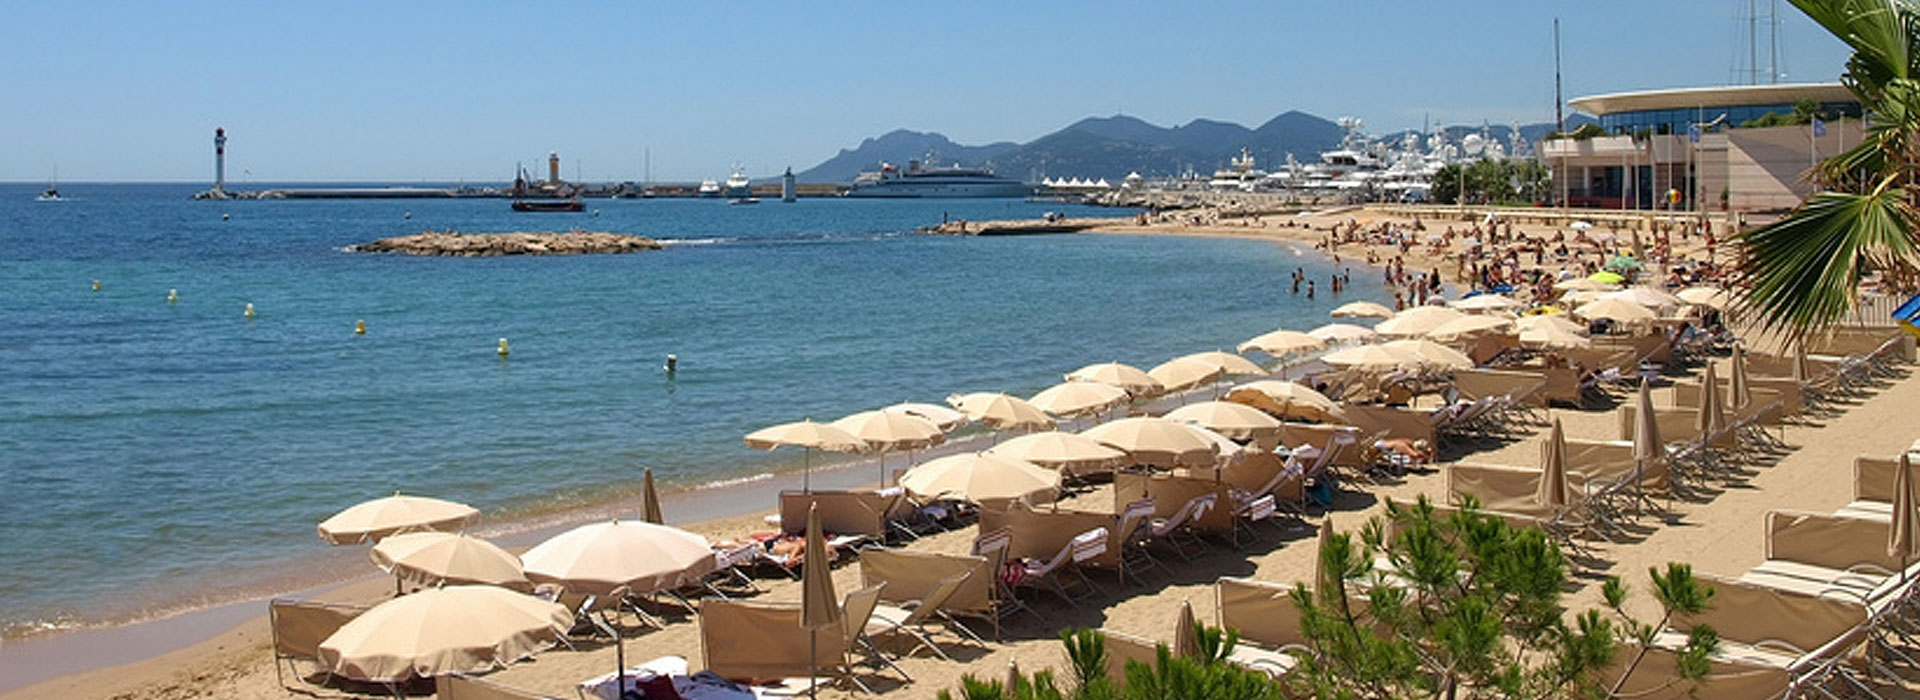 Cannes - Côte d'Azur - Frankreich